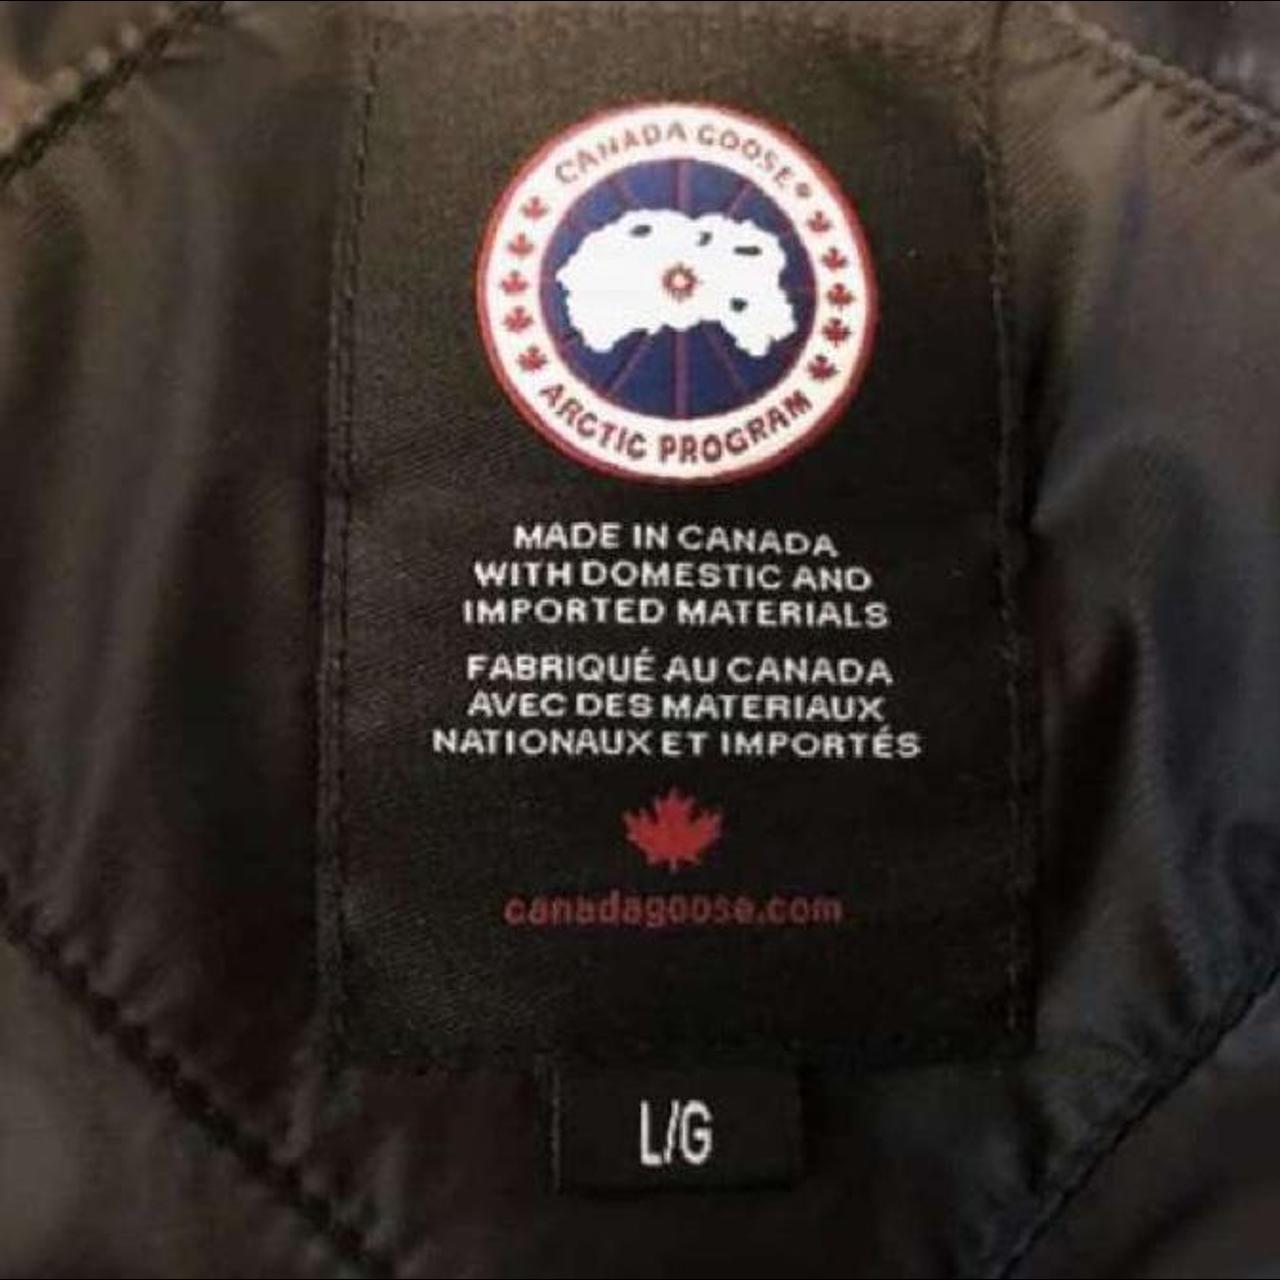 Canada goose wyndham parka #authentic #designer #coat - Depop